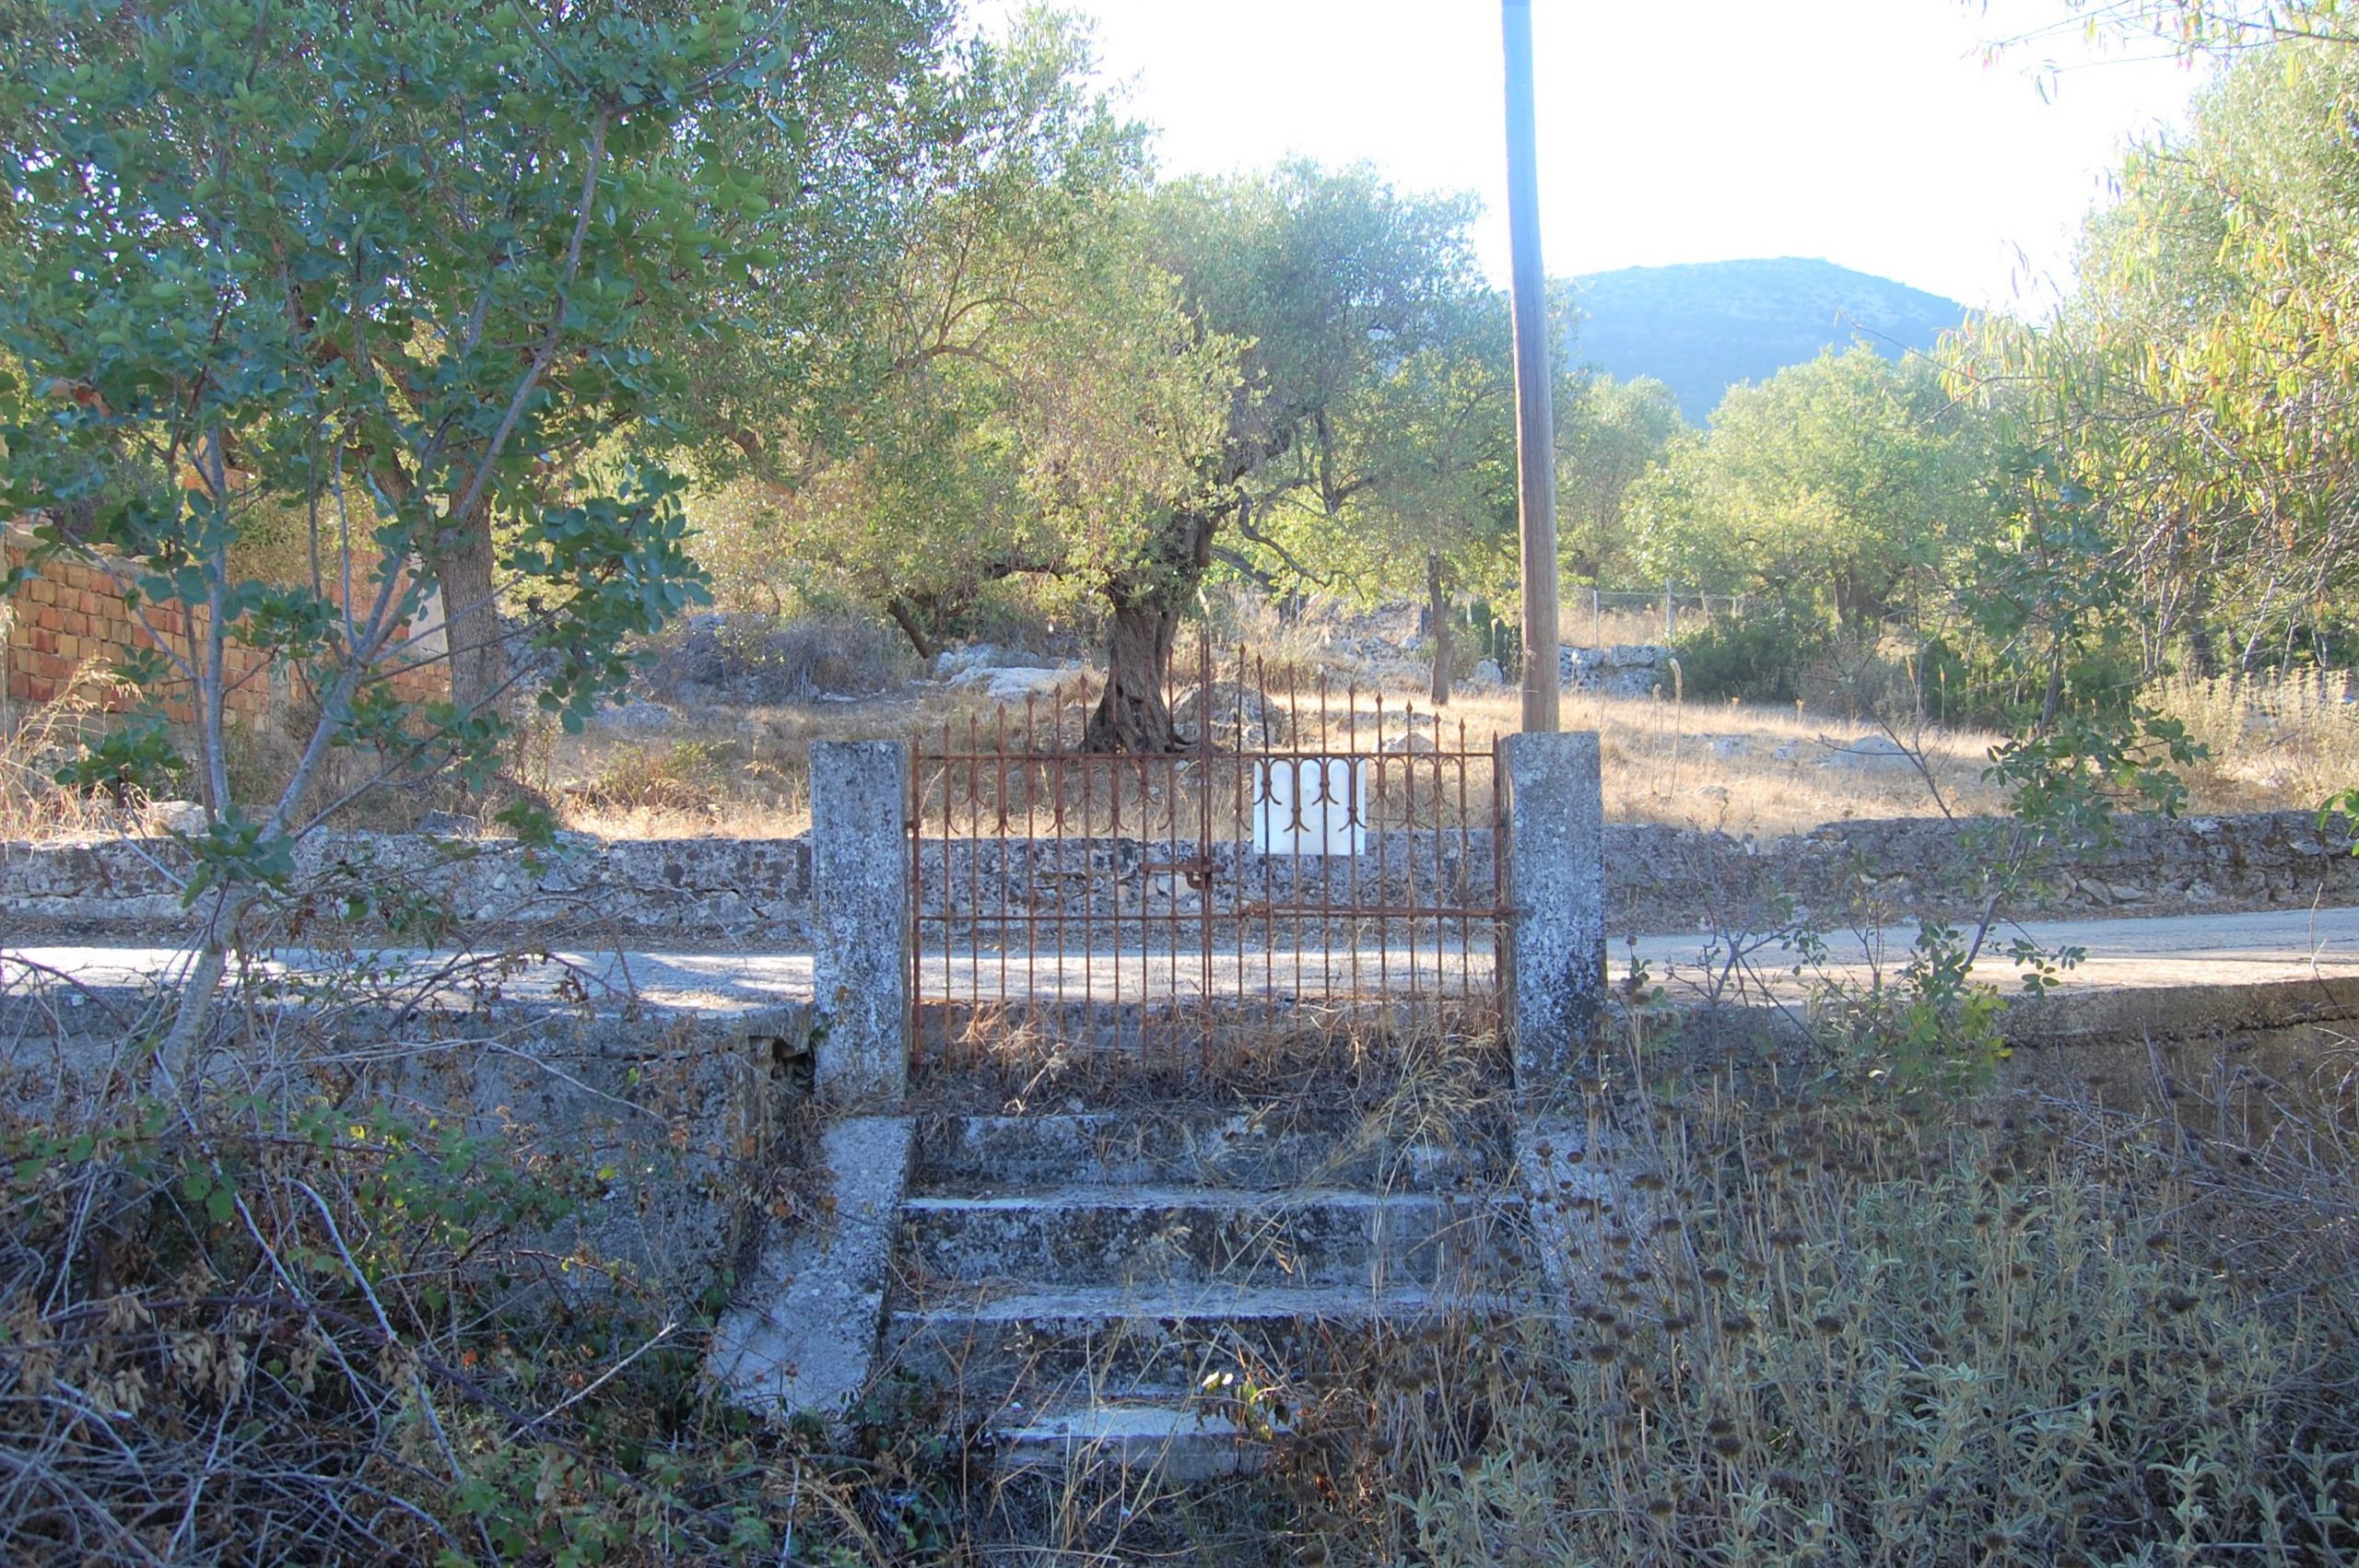 Μπροστινή πύλη κατοικίας προς πώληση Ιθακος Ελλάδα, Σταυρός